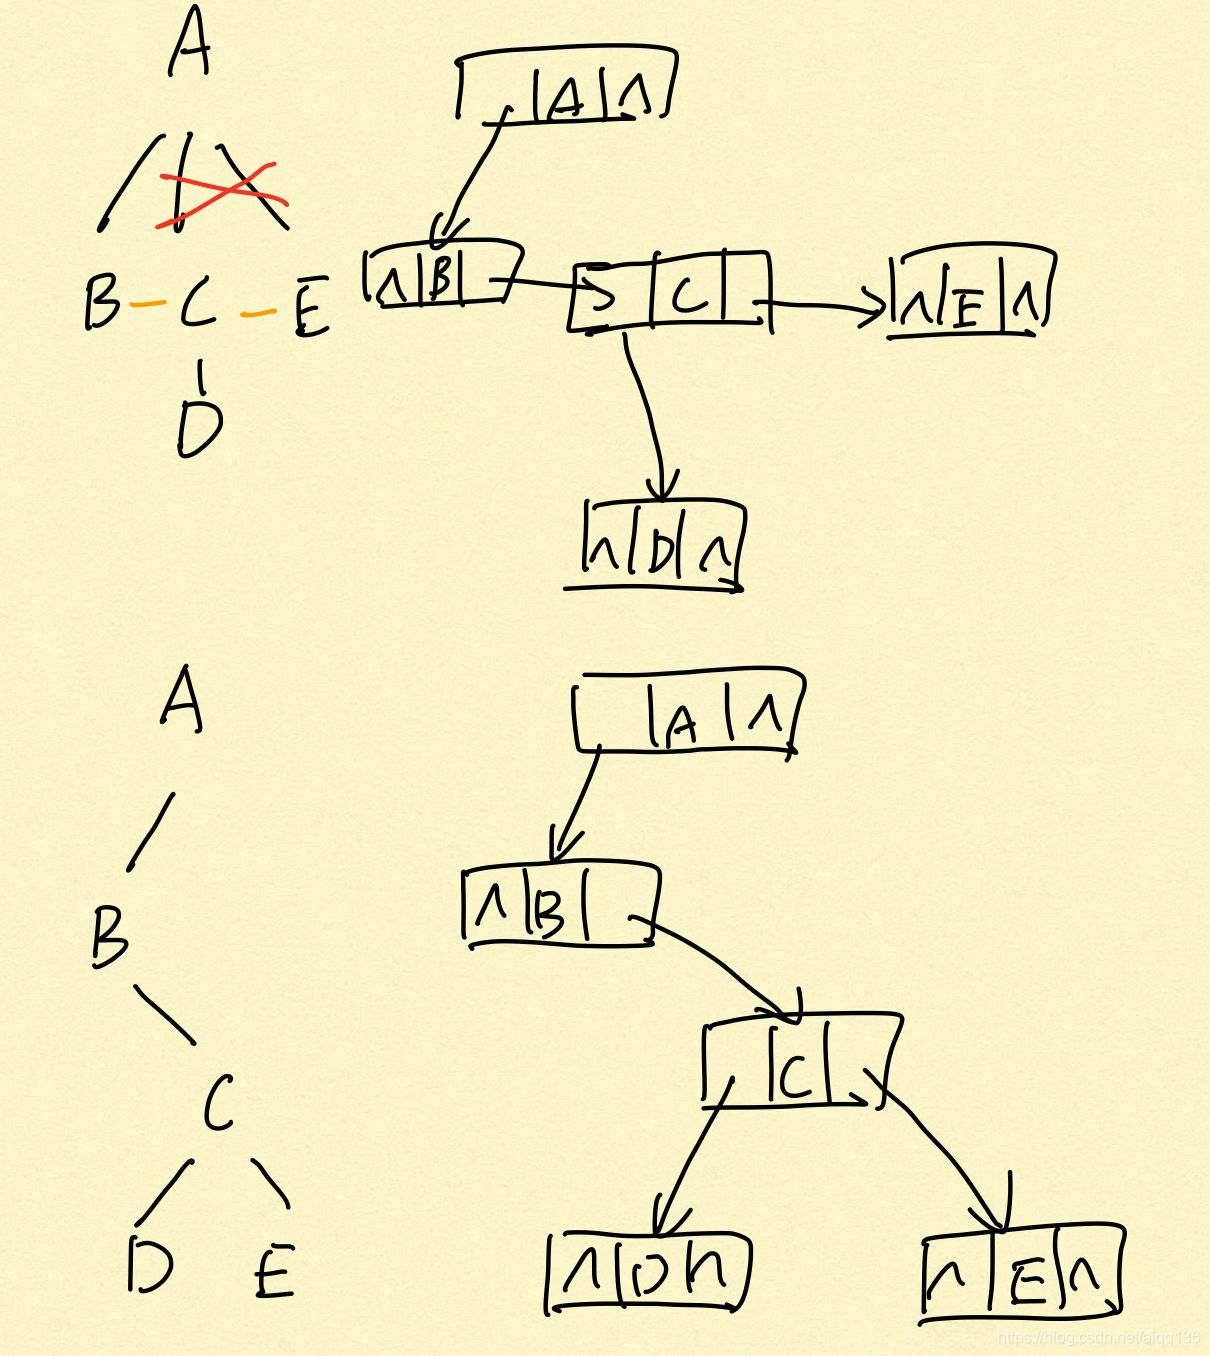 C语言数据结构-树和二叉树-树转二叉树-使用队列，编写transfrom函数，将普通树转换成对应的二叉树